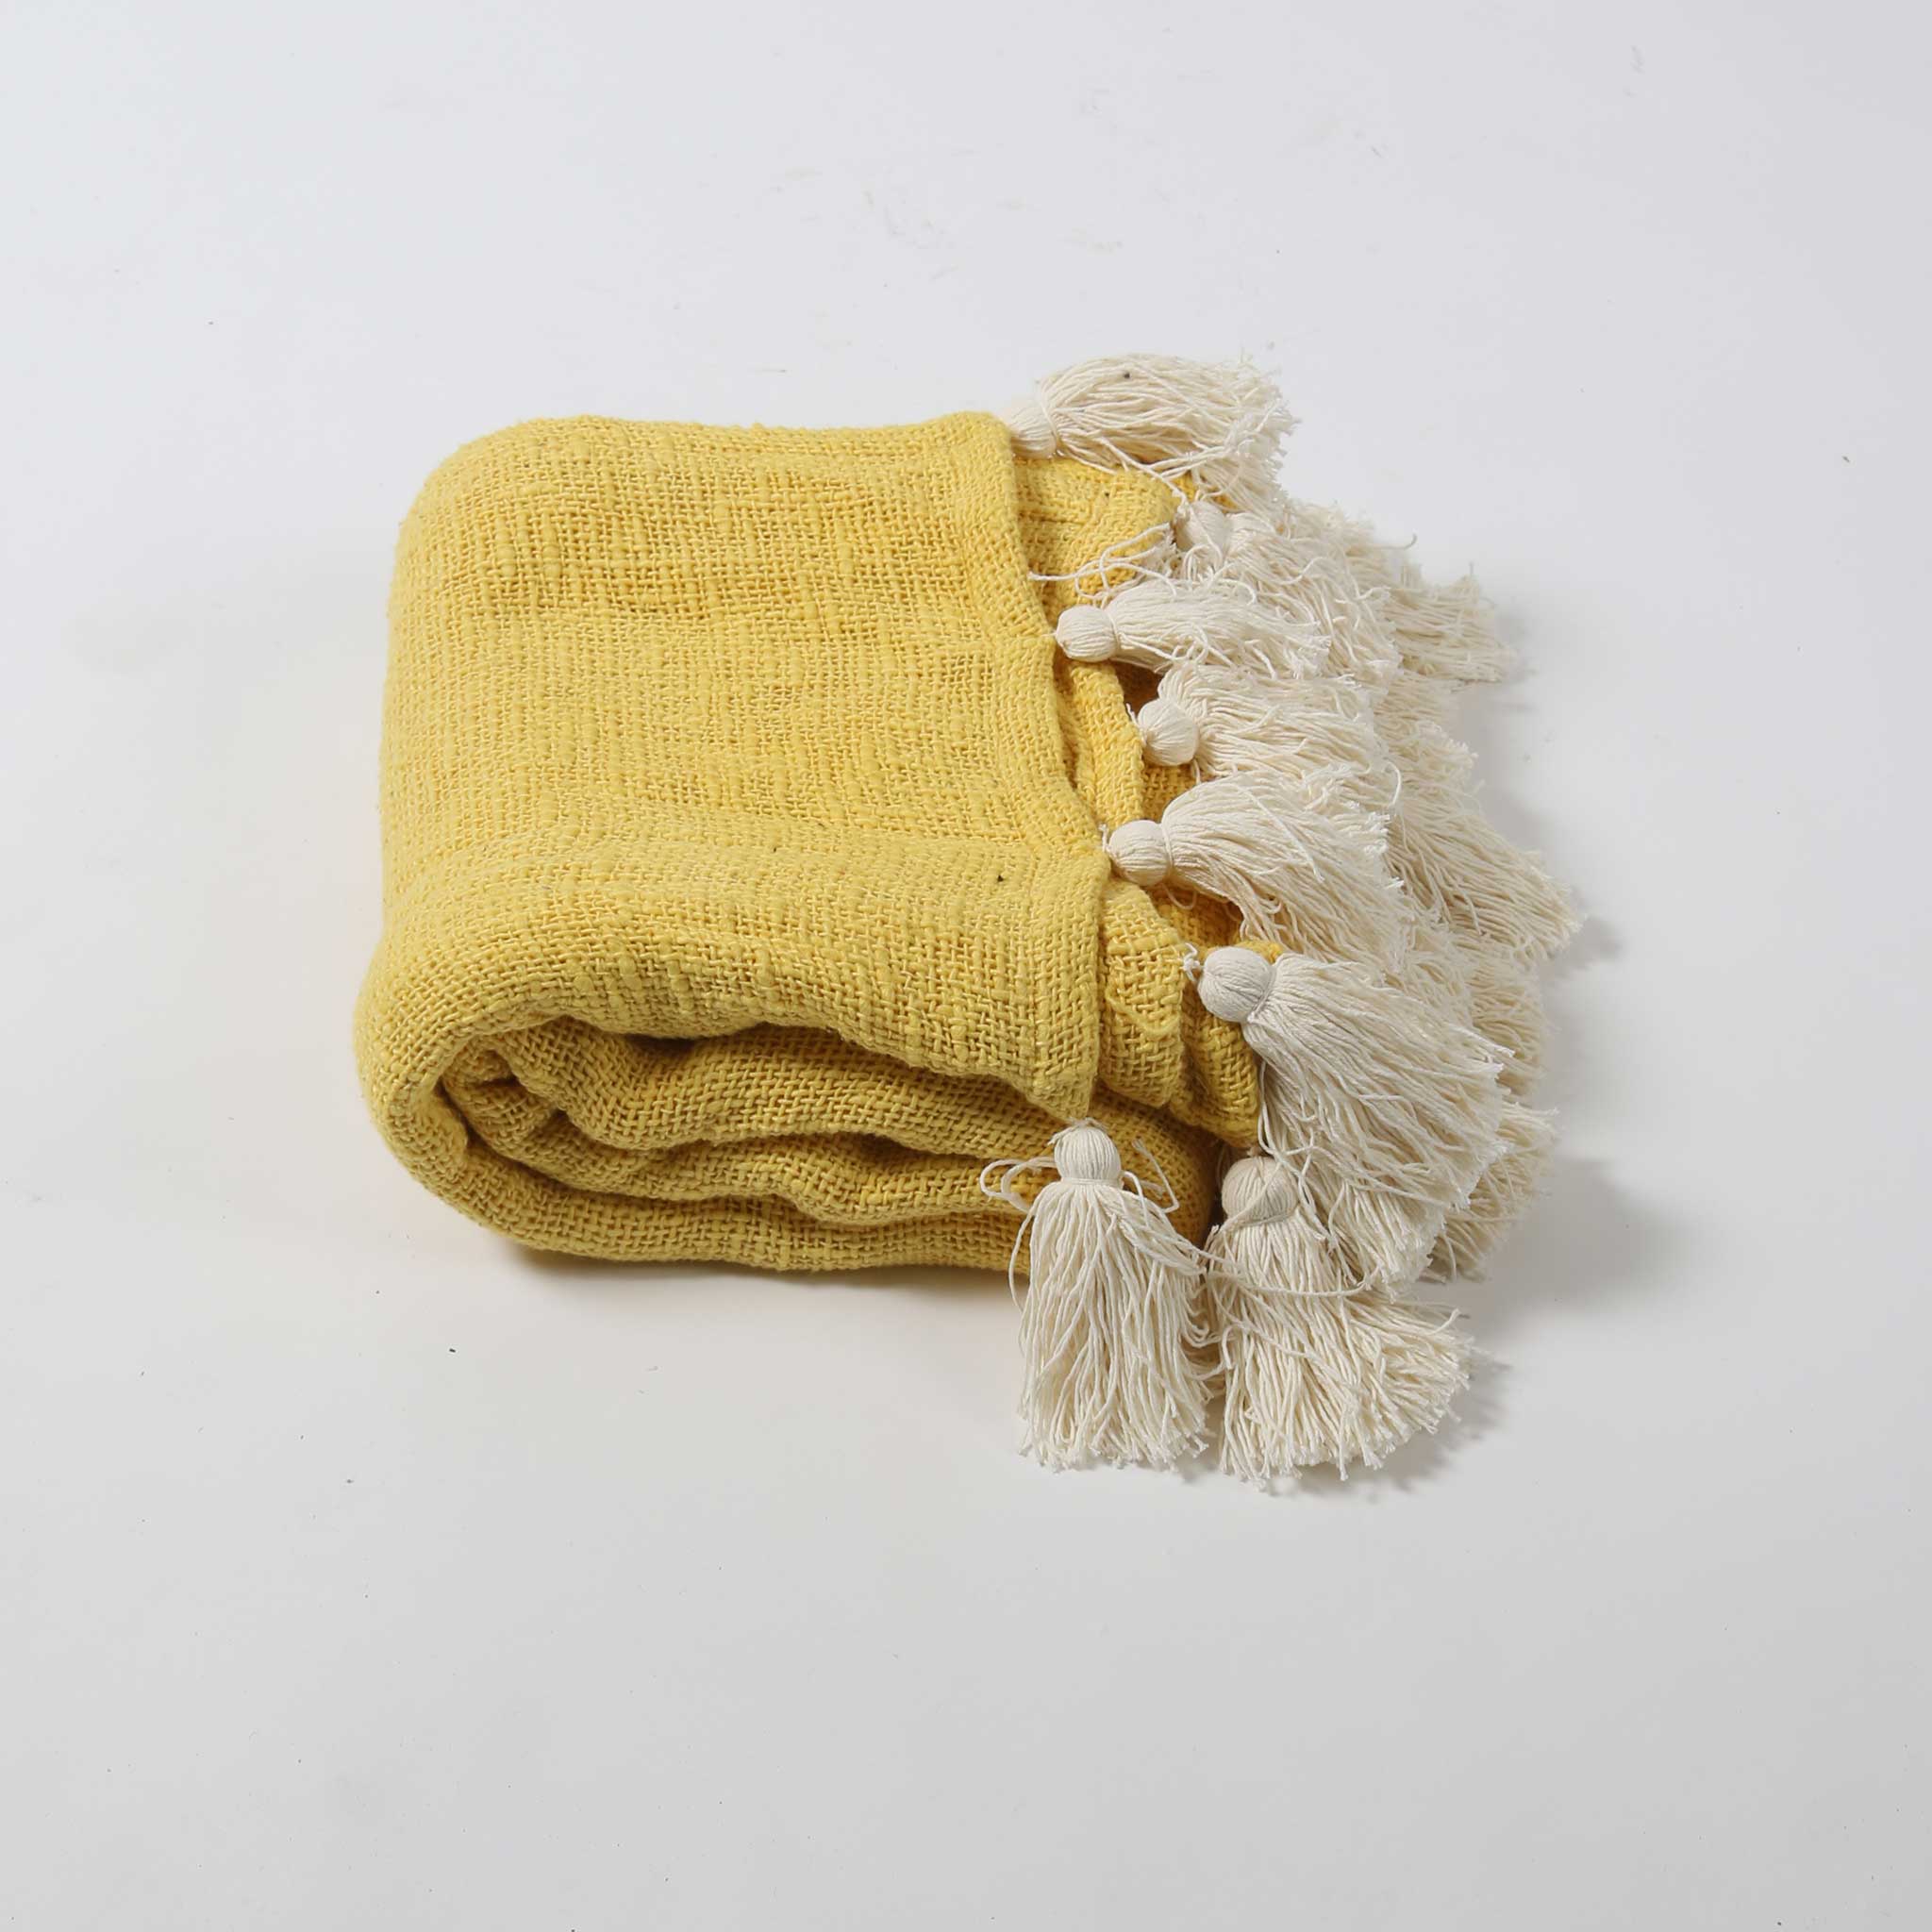 Mustard Cotton Textured Throw with Cream Tassels